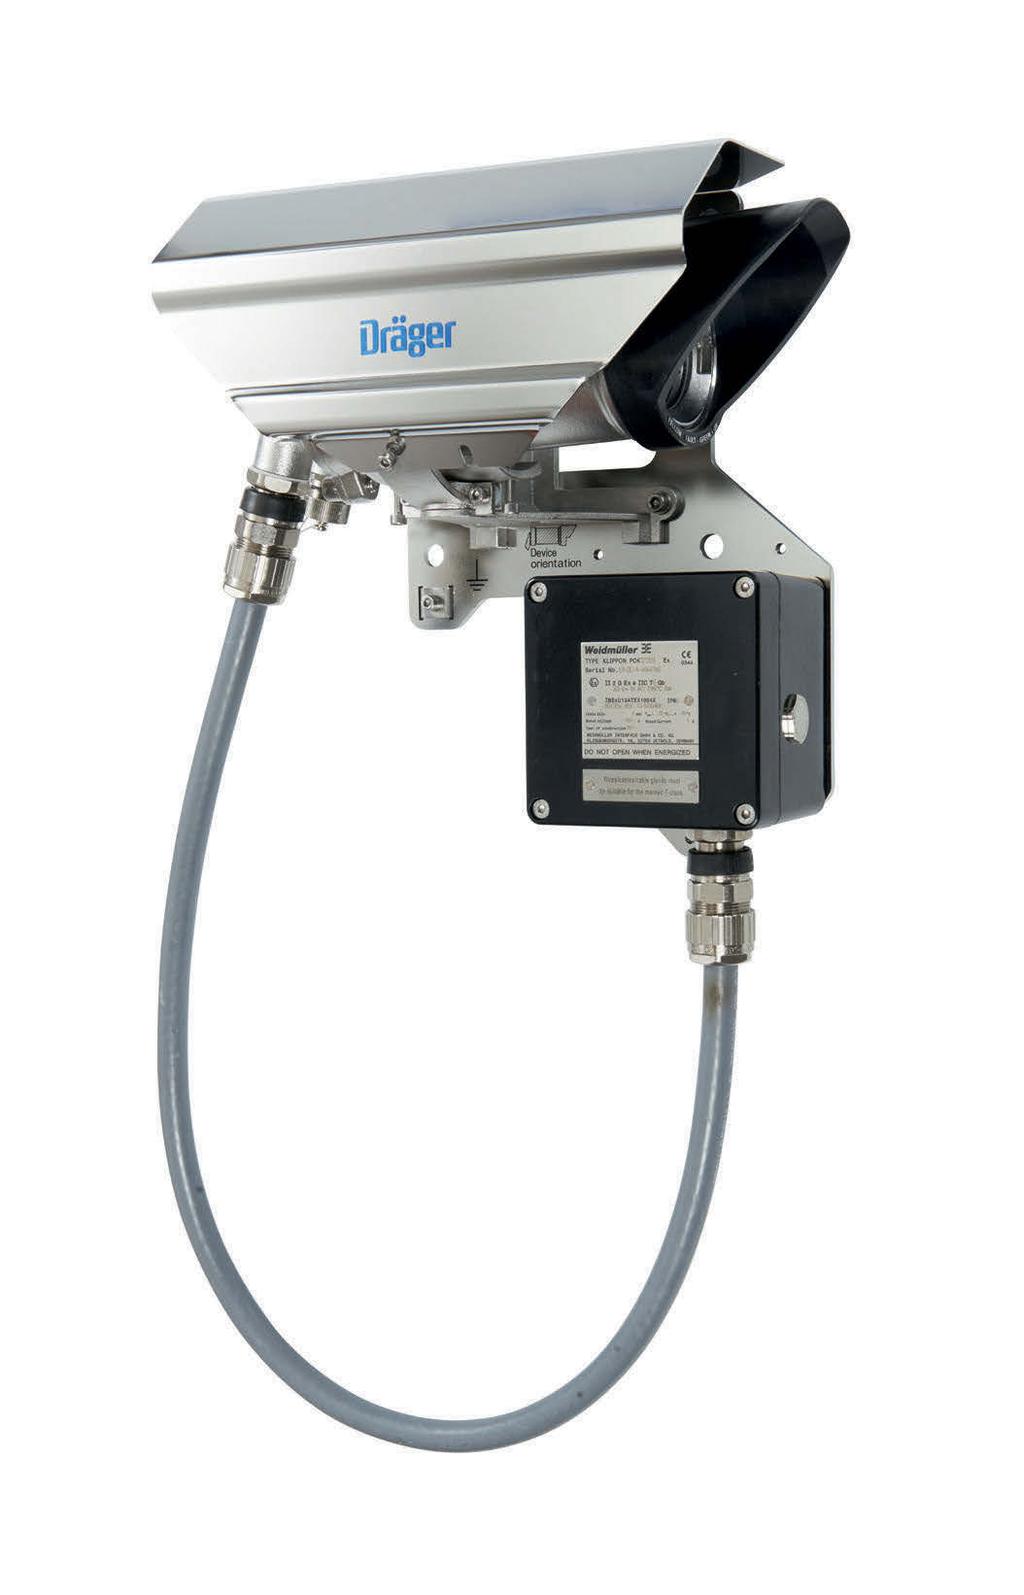 Dräger Pulsar 7000 sorozat Gyúlékony gázok és gőzök érzékelése A Dräger Pulsar 7000 sorozat tagjai telepített gázérzékelő rendszerek, amelyek nyitott mérési útvonallal monitorozzák a